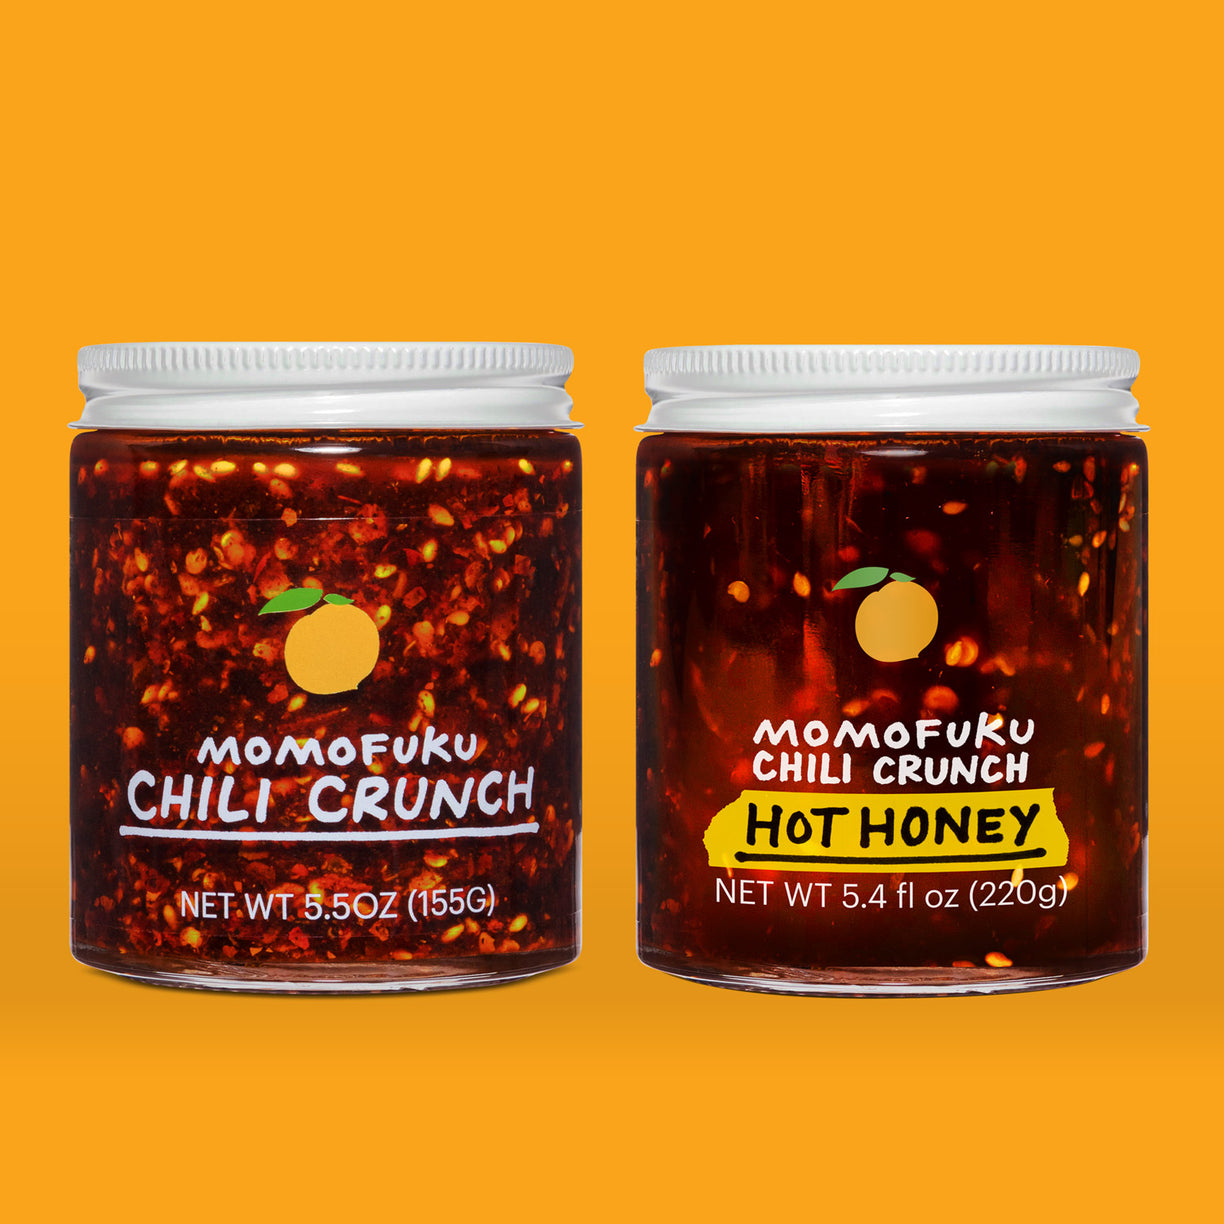 Original and hot honey chili crunch